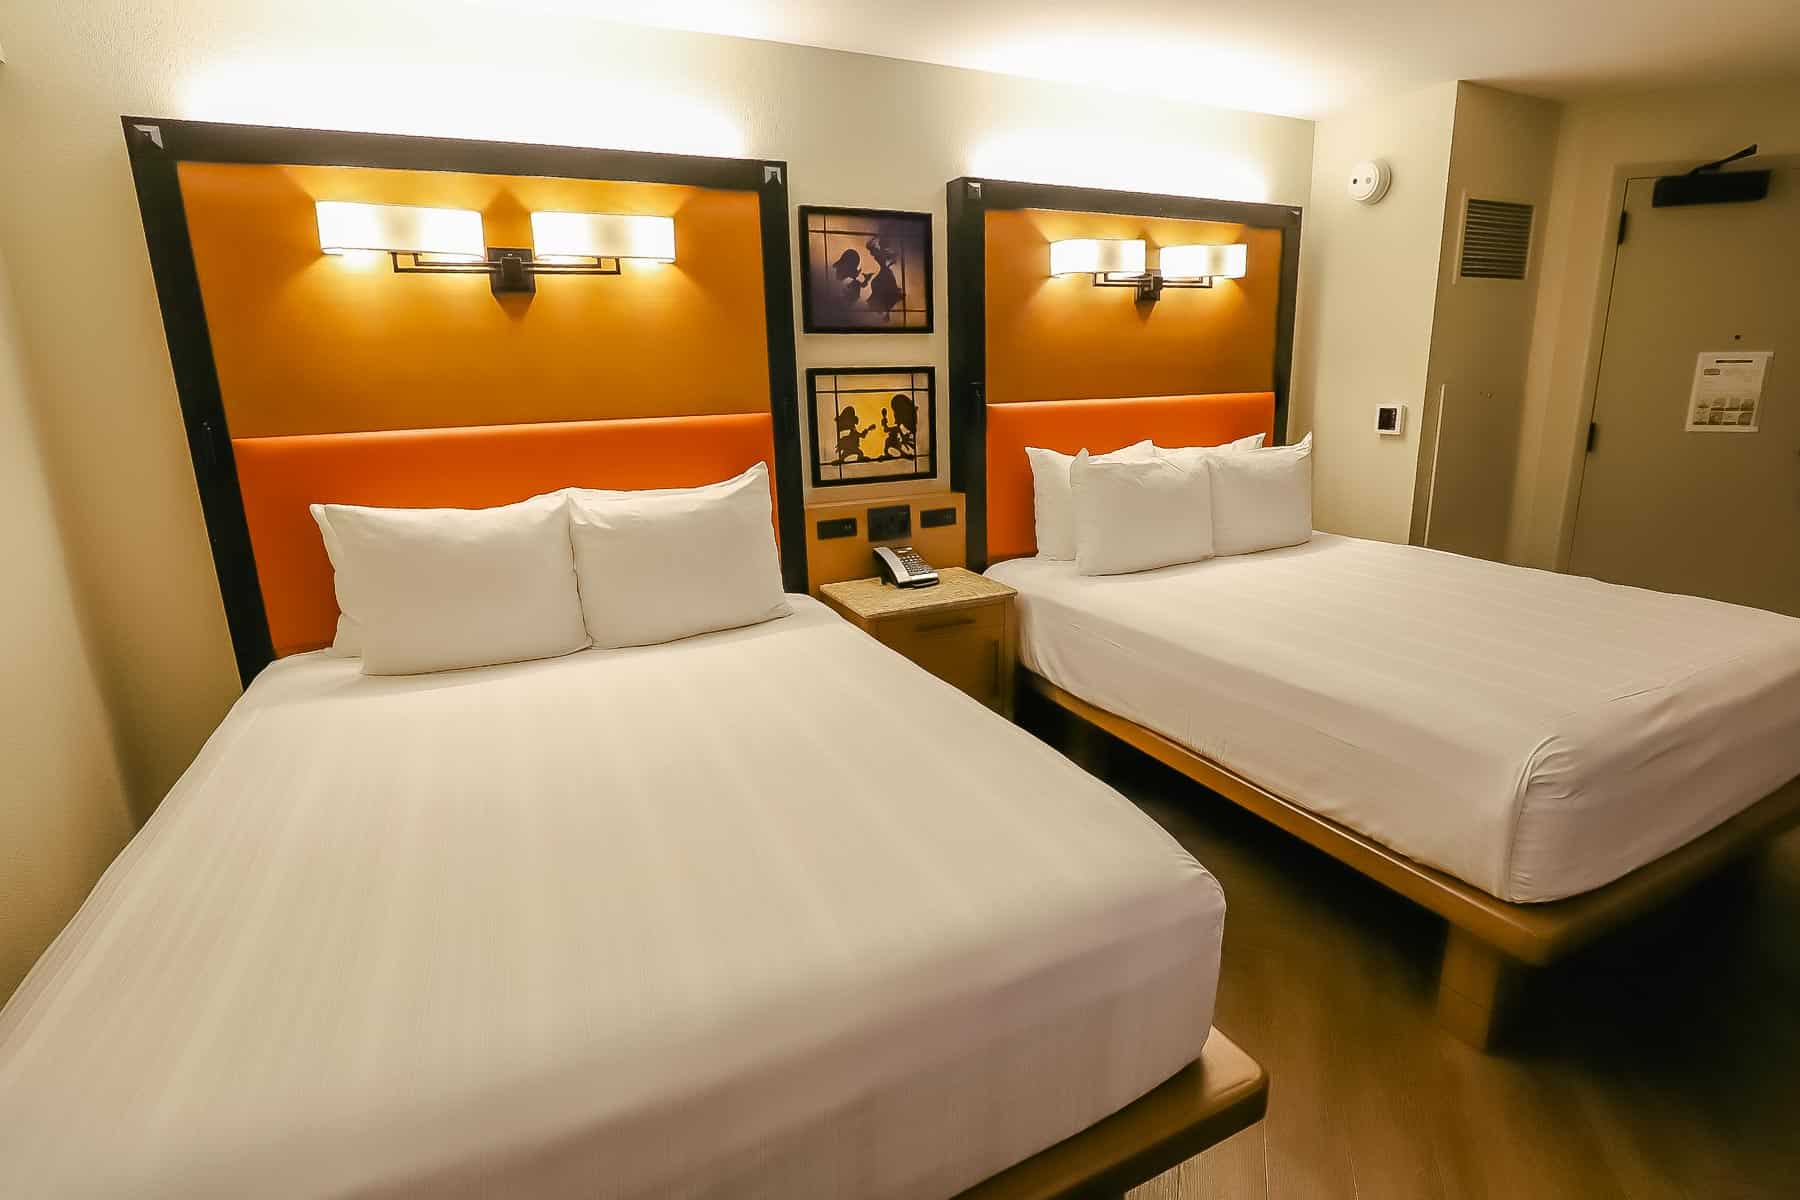 Disney's Coronado Springs standard rooms have two queen beds. 